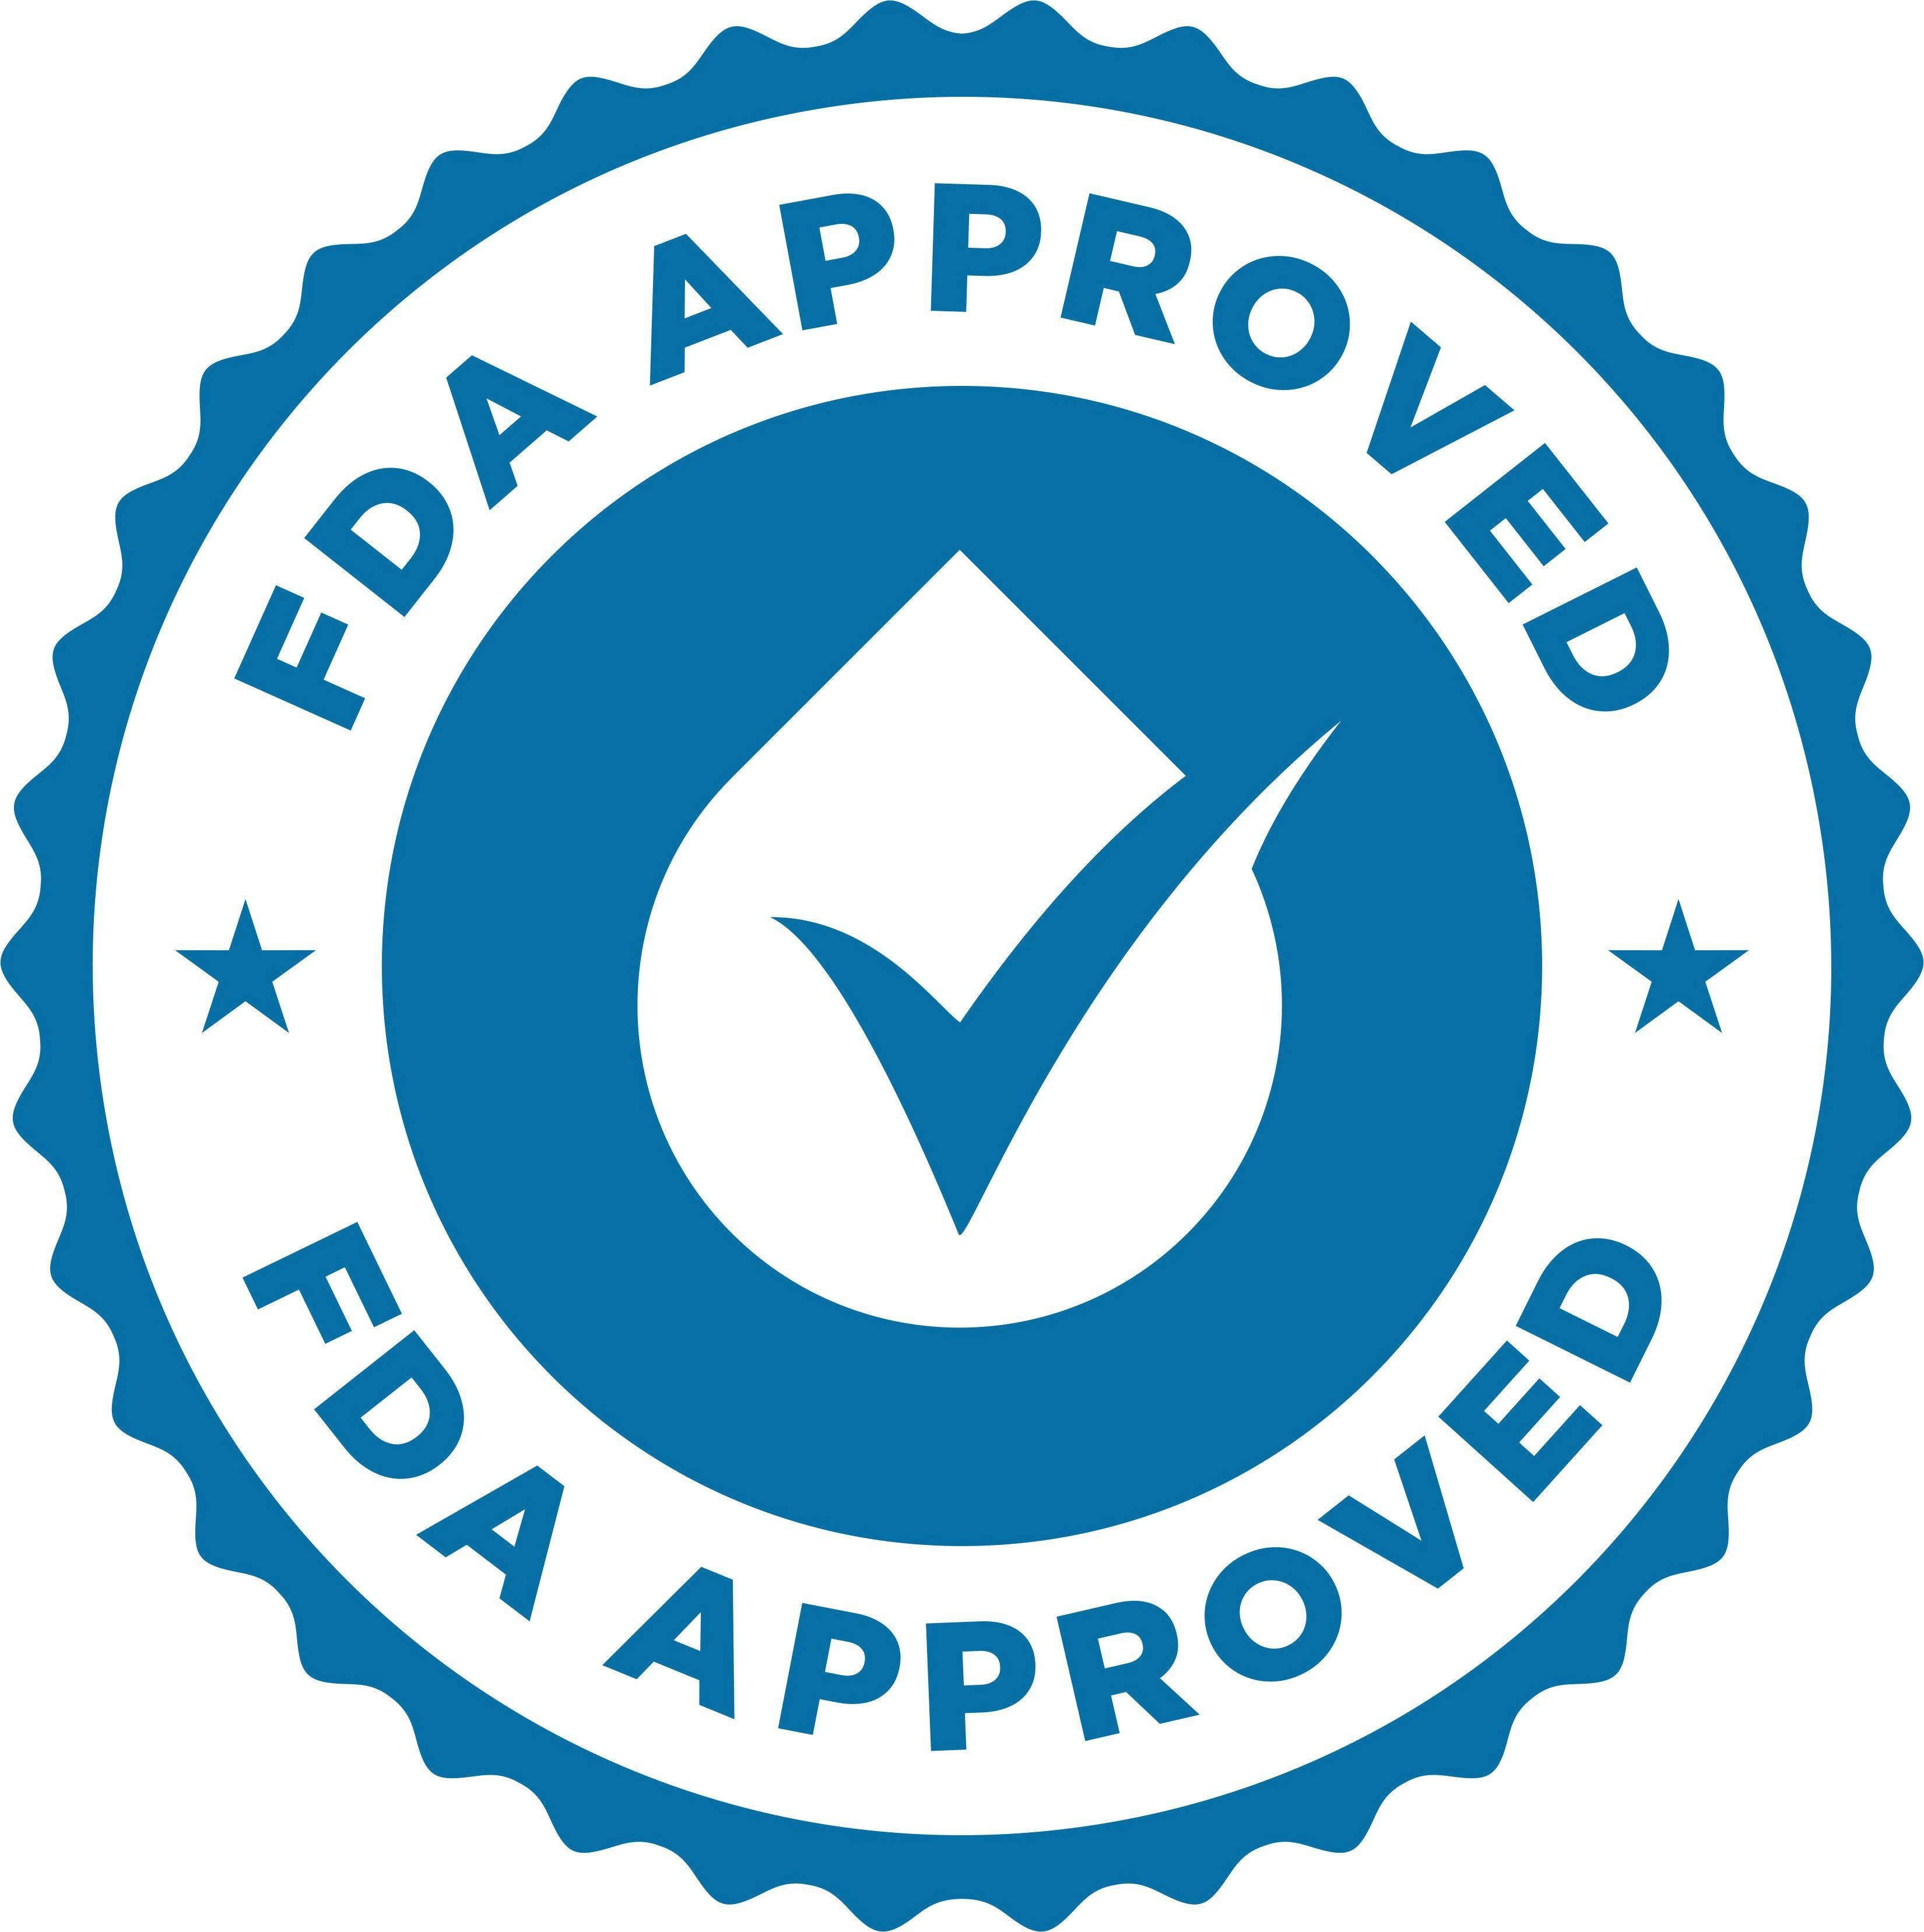 Updates on FDA drug approvals